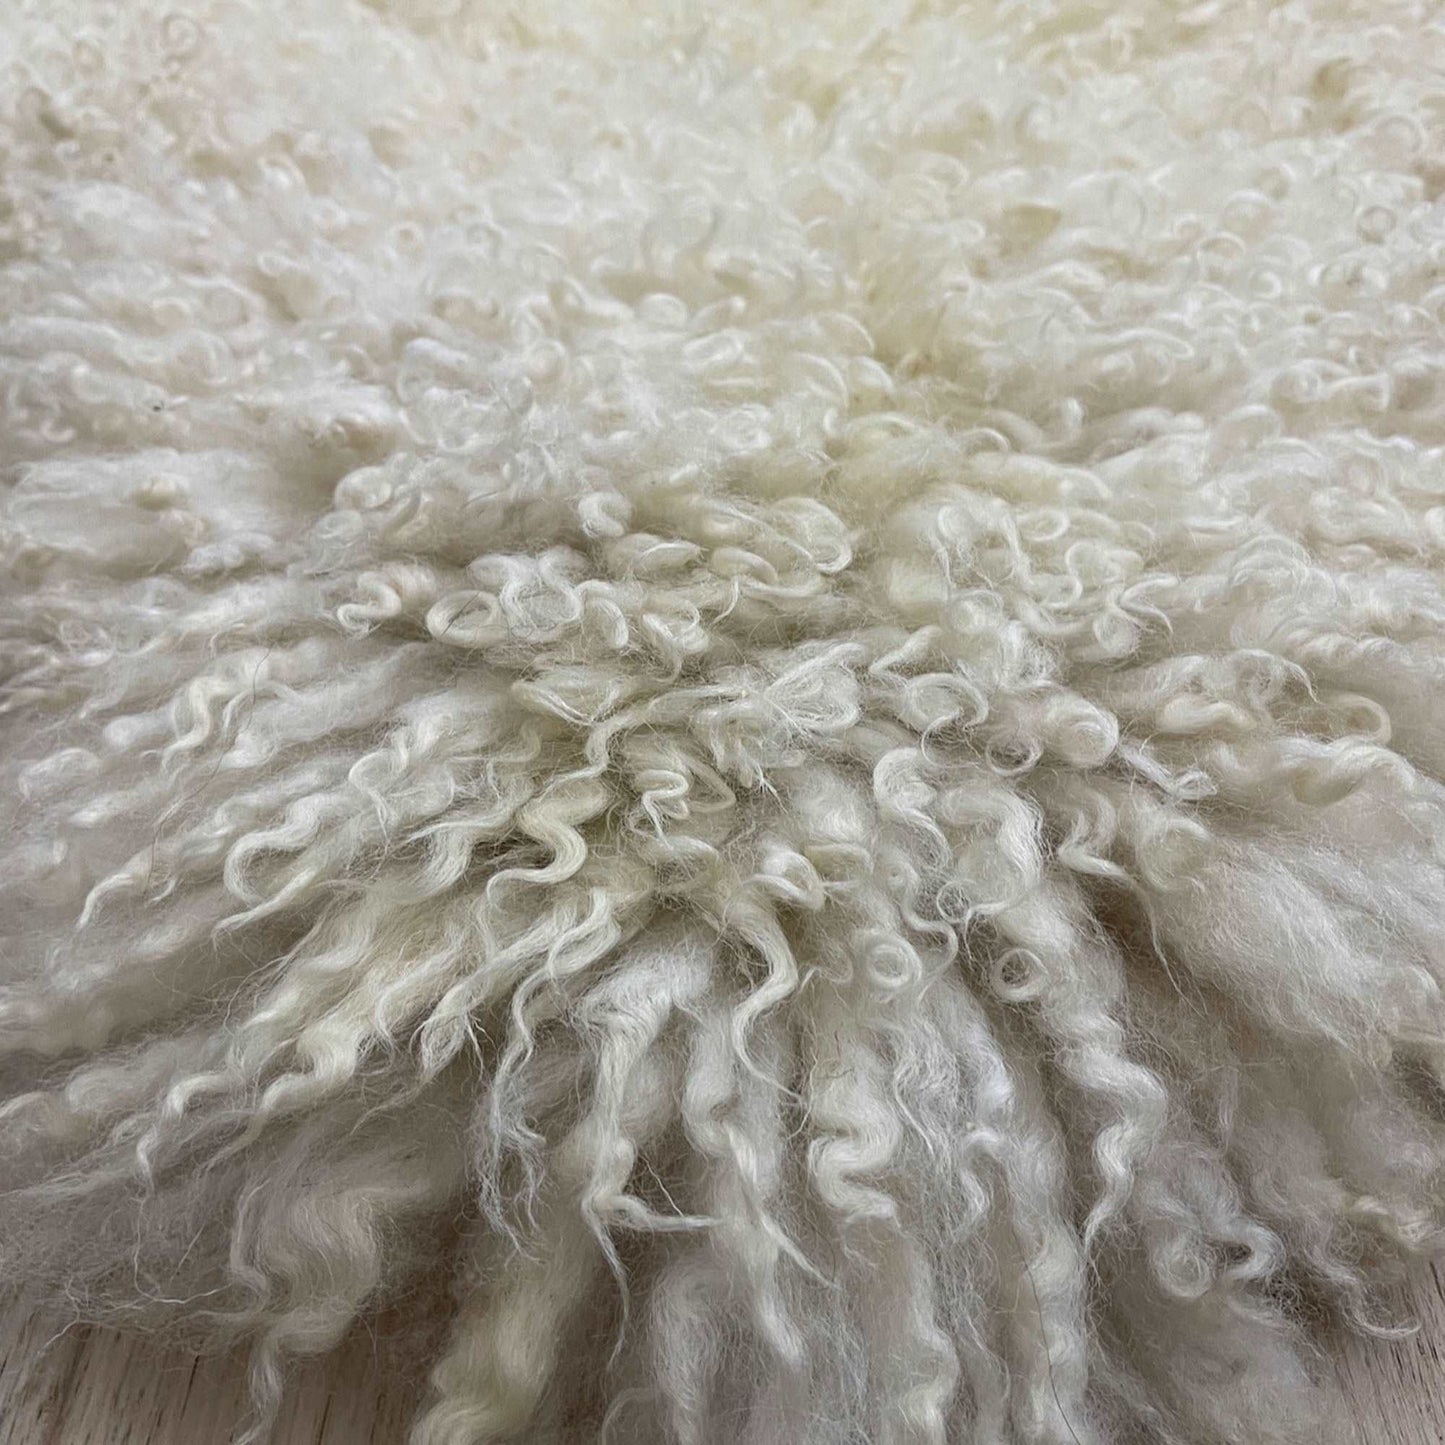 British Curly Sheepskin Ivory Cream White 100% Natural Sheep Skin Rug - Wildash London